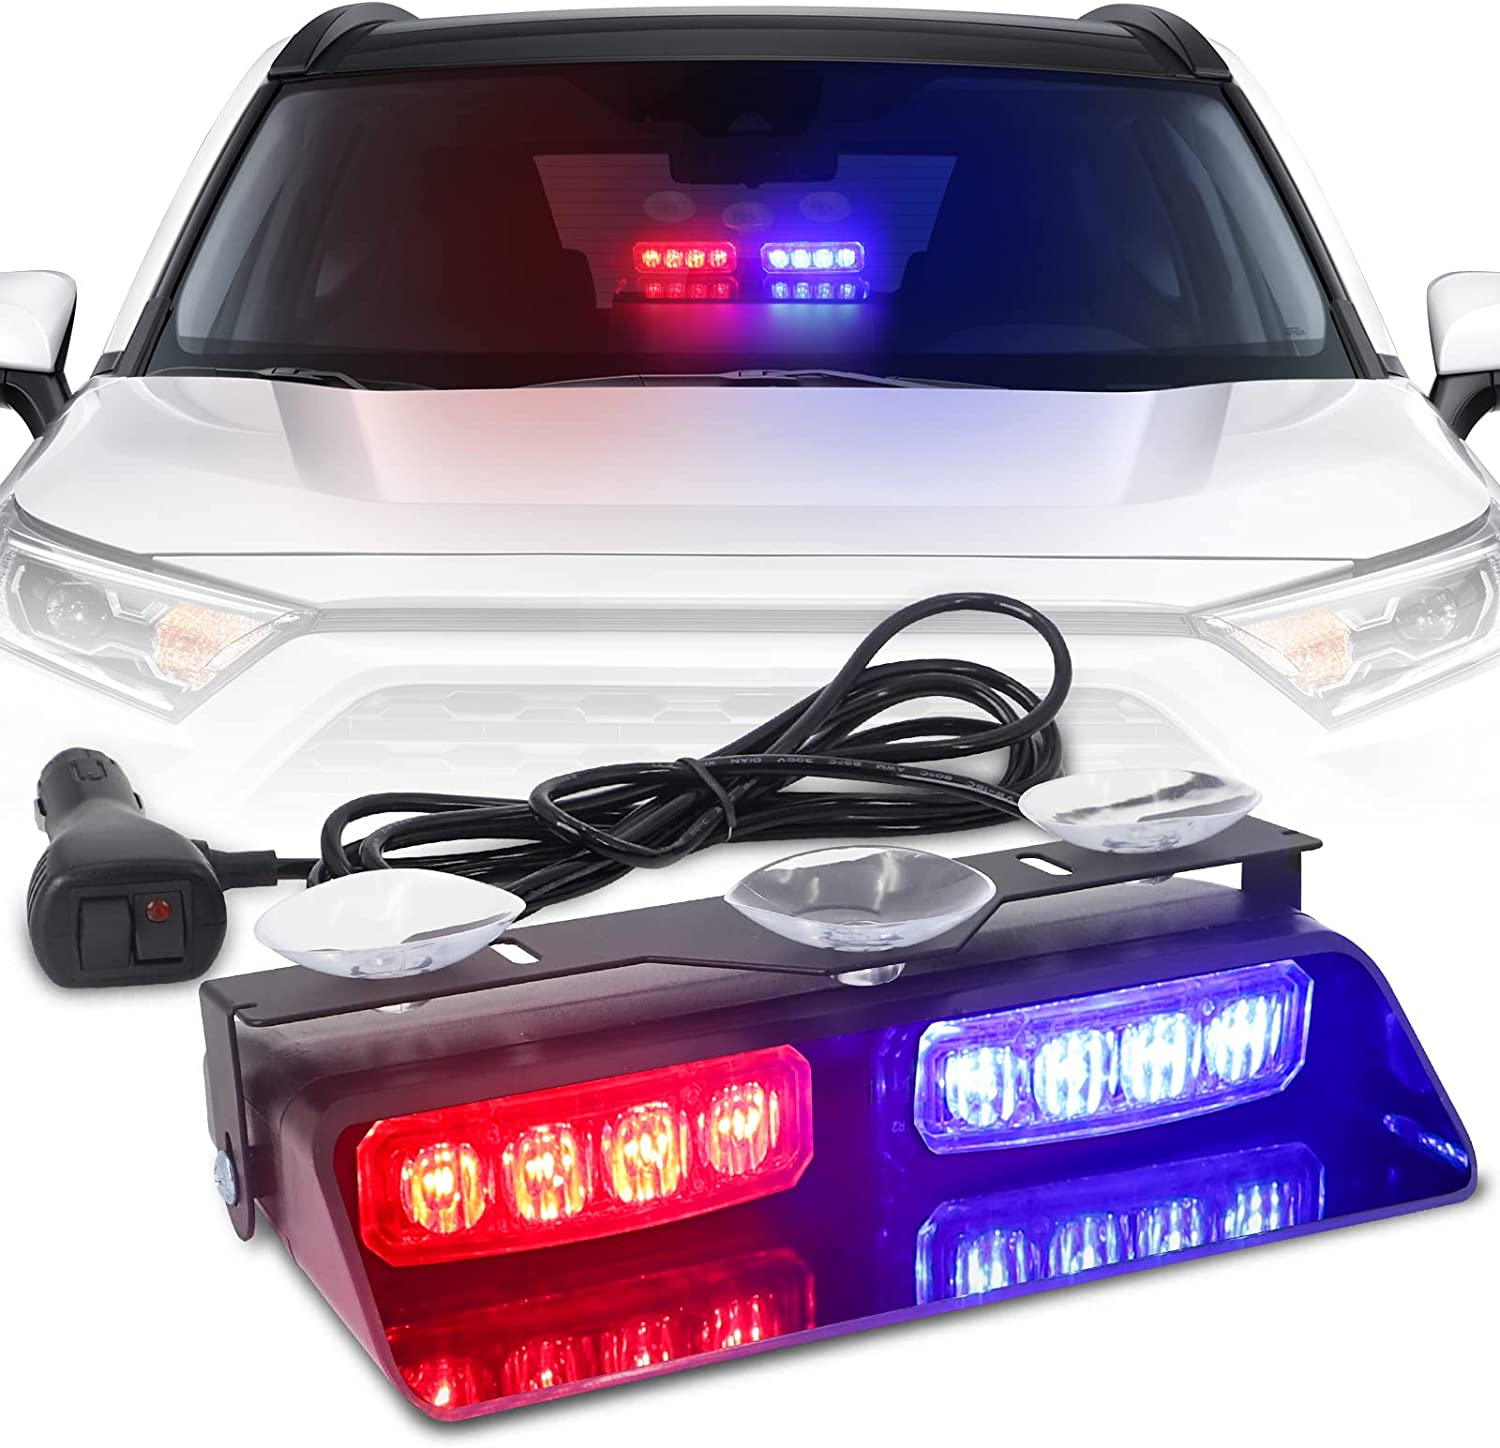 Autocollant de lampe flash au néon pour voiture - Non vendu en magasin